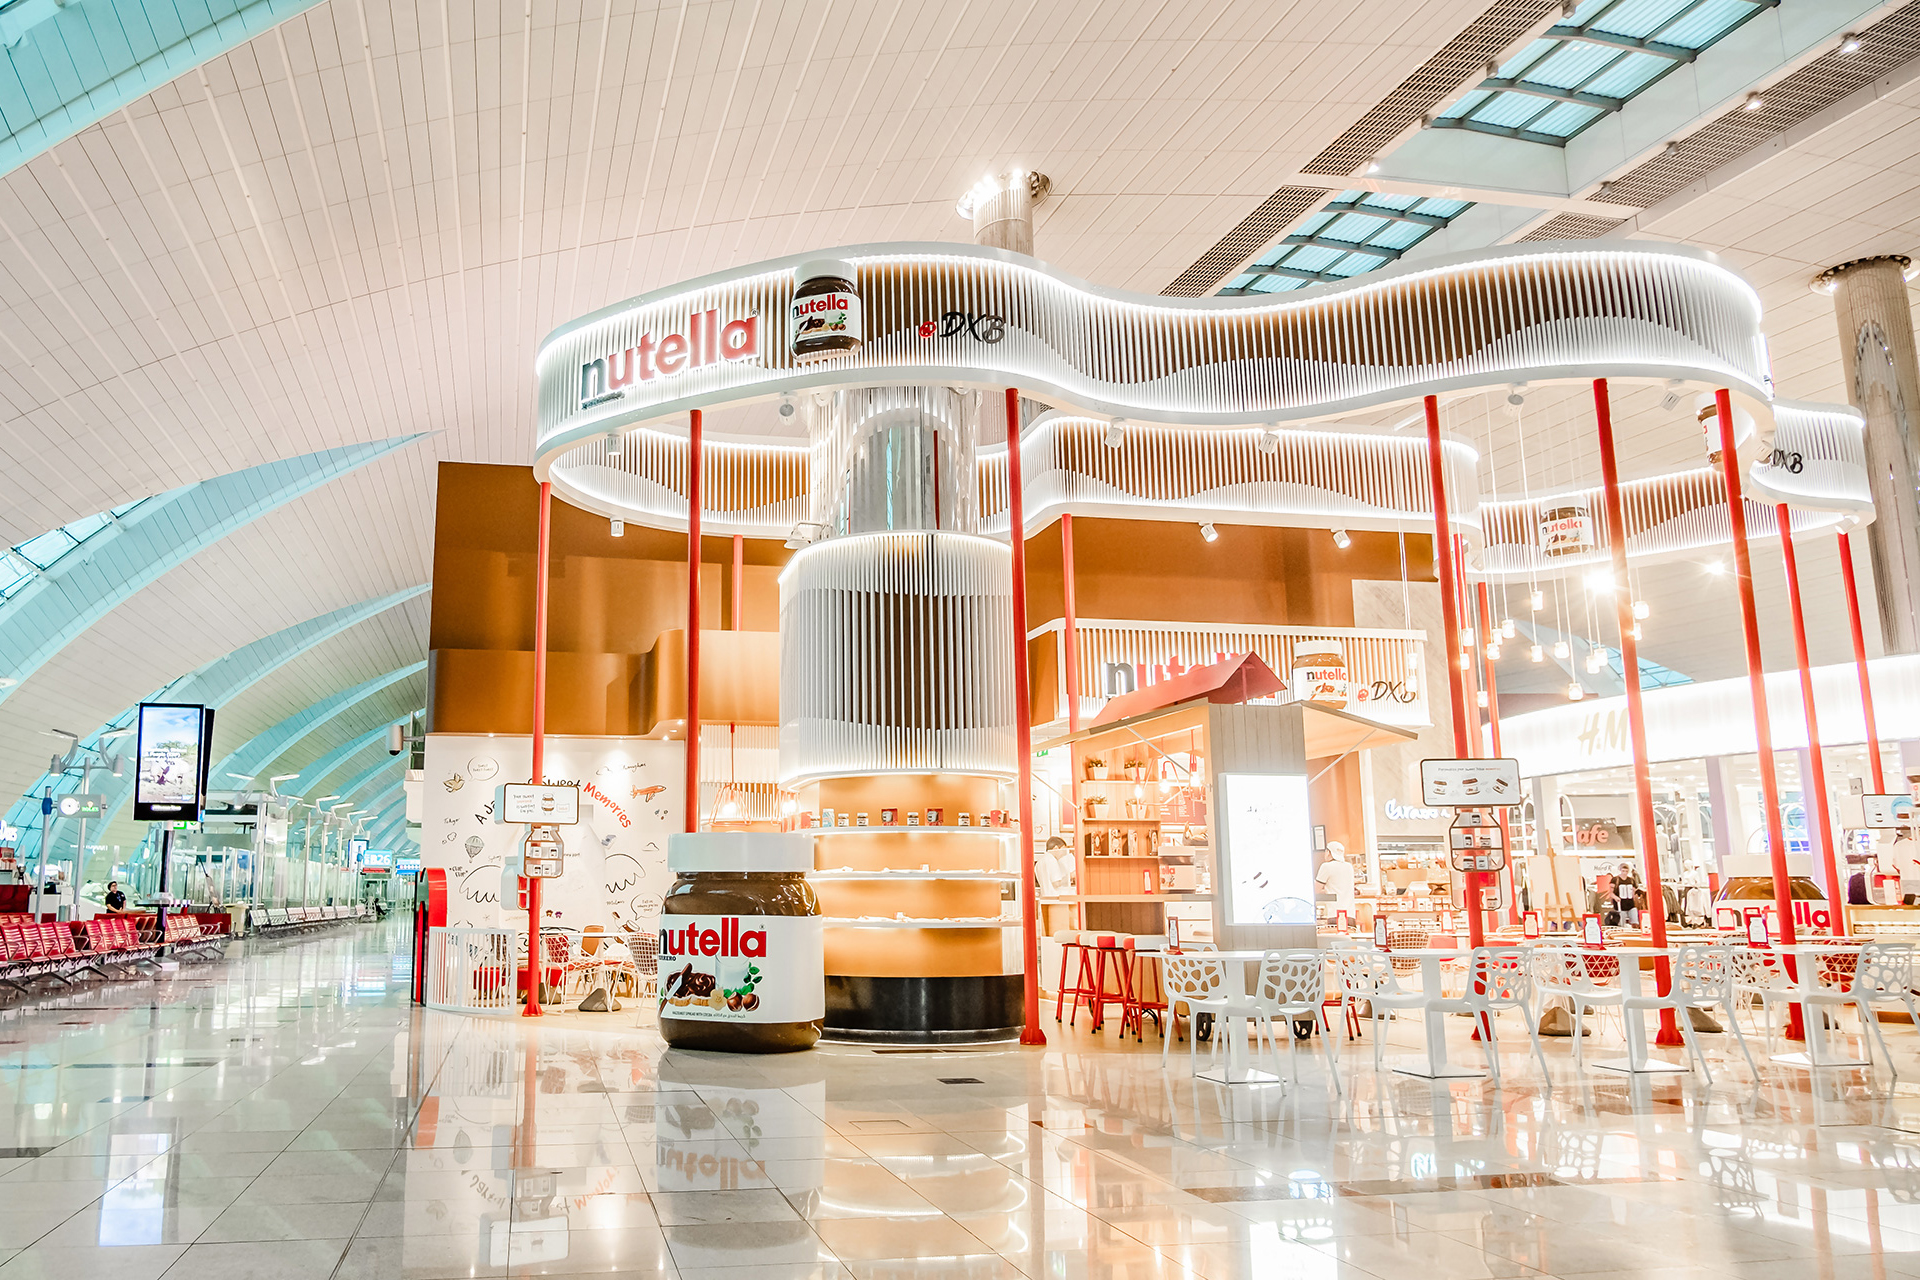 Dubai airport Nutella brand activation